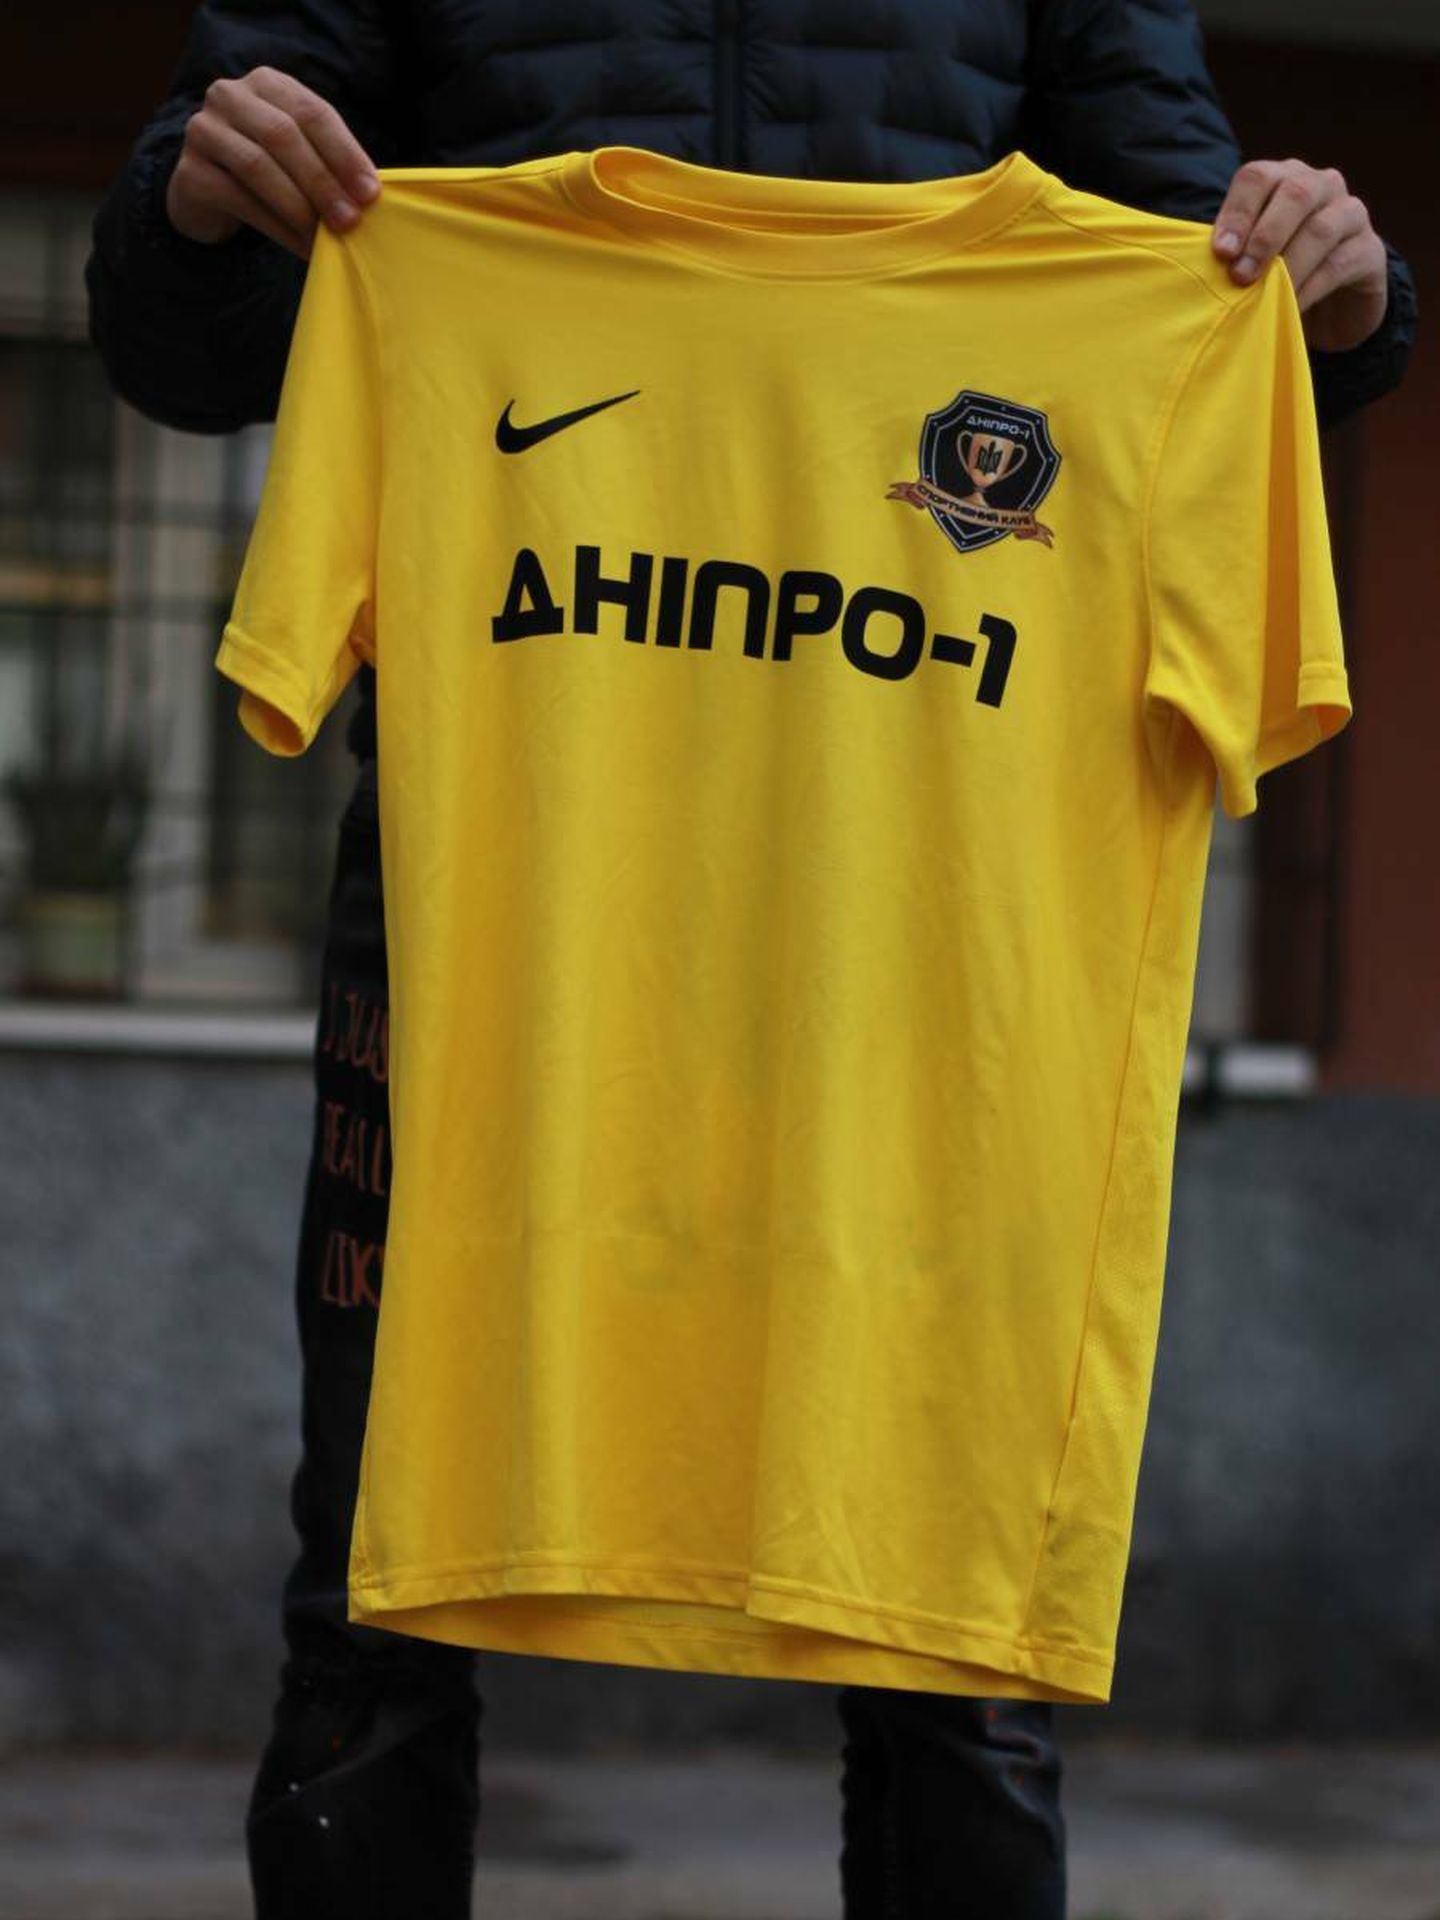 Camiseta del FC Dnipro. (A.F.)